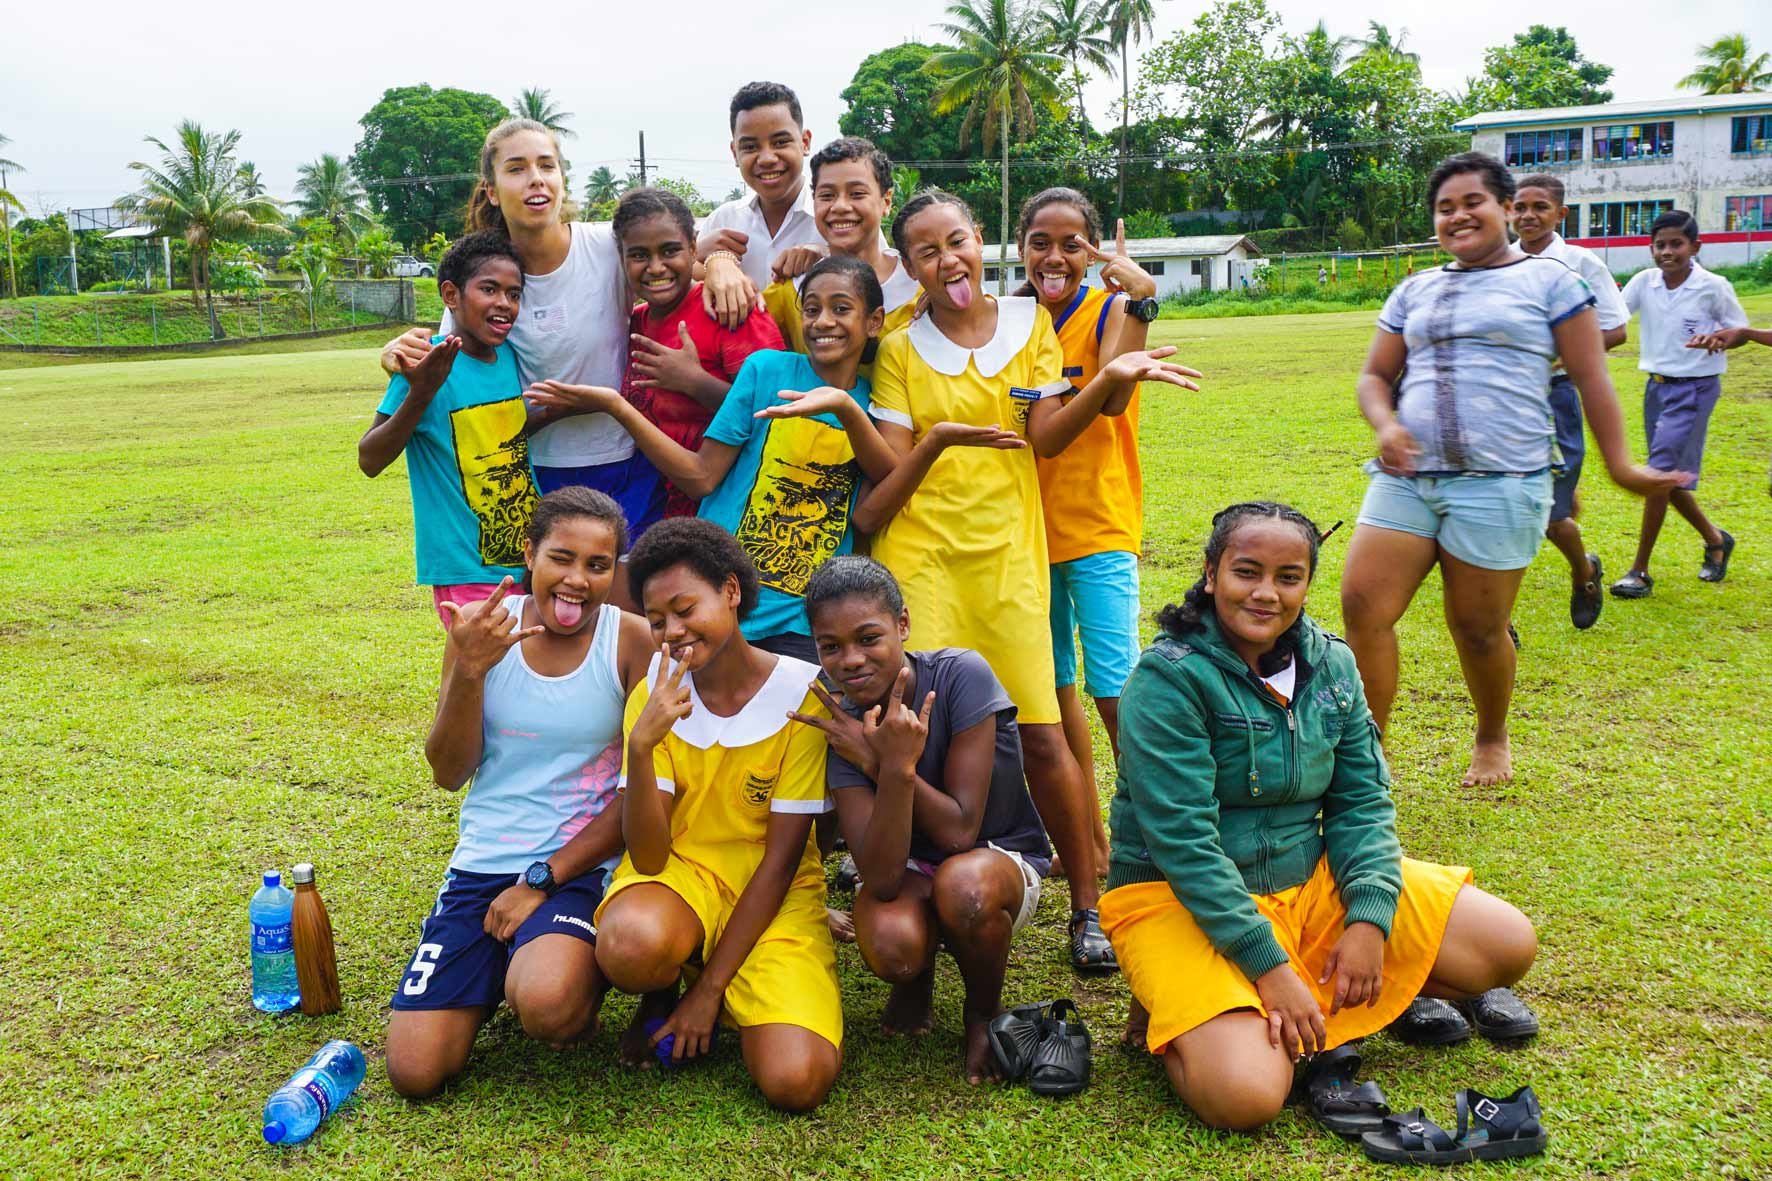 AIFS-Freiwilligenarbeit-Fidschi-Sports-coaching-gruppenfoto-sport-unterricht-spaß-bewegung-volunteer